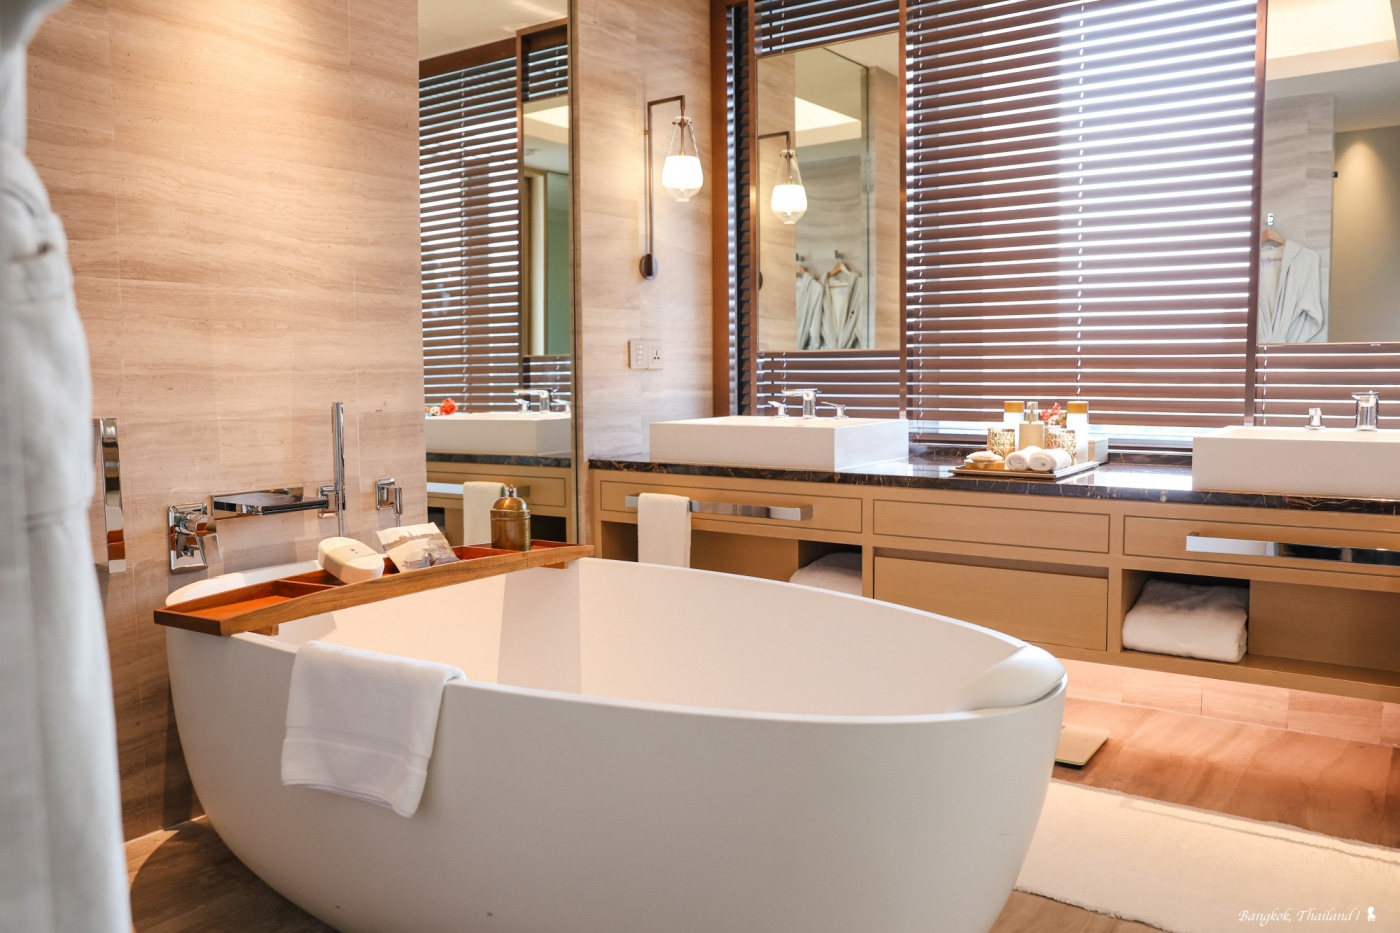 每間客房都有個符合人體工學的蛋形浴缸，可以從容享受泡澡時光。（圖片來源：陳耀恩提供）